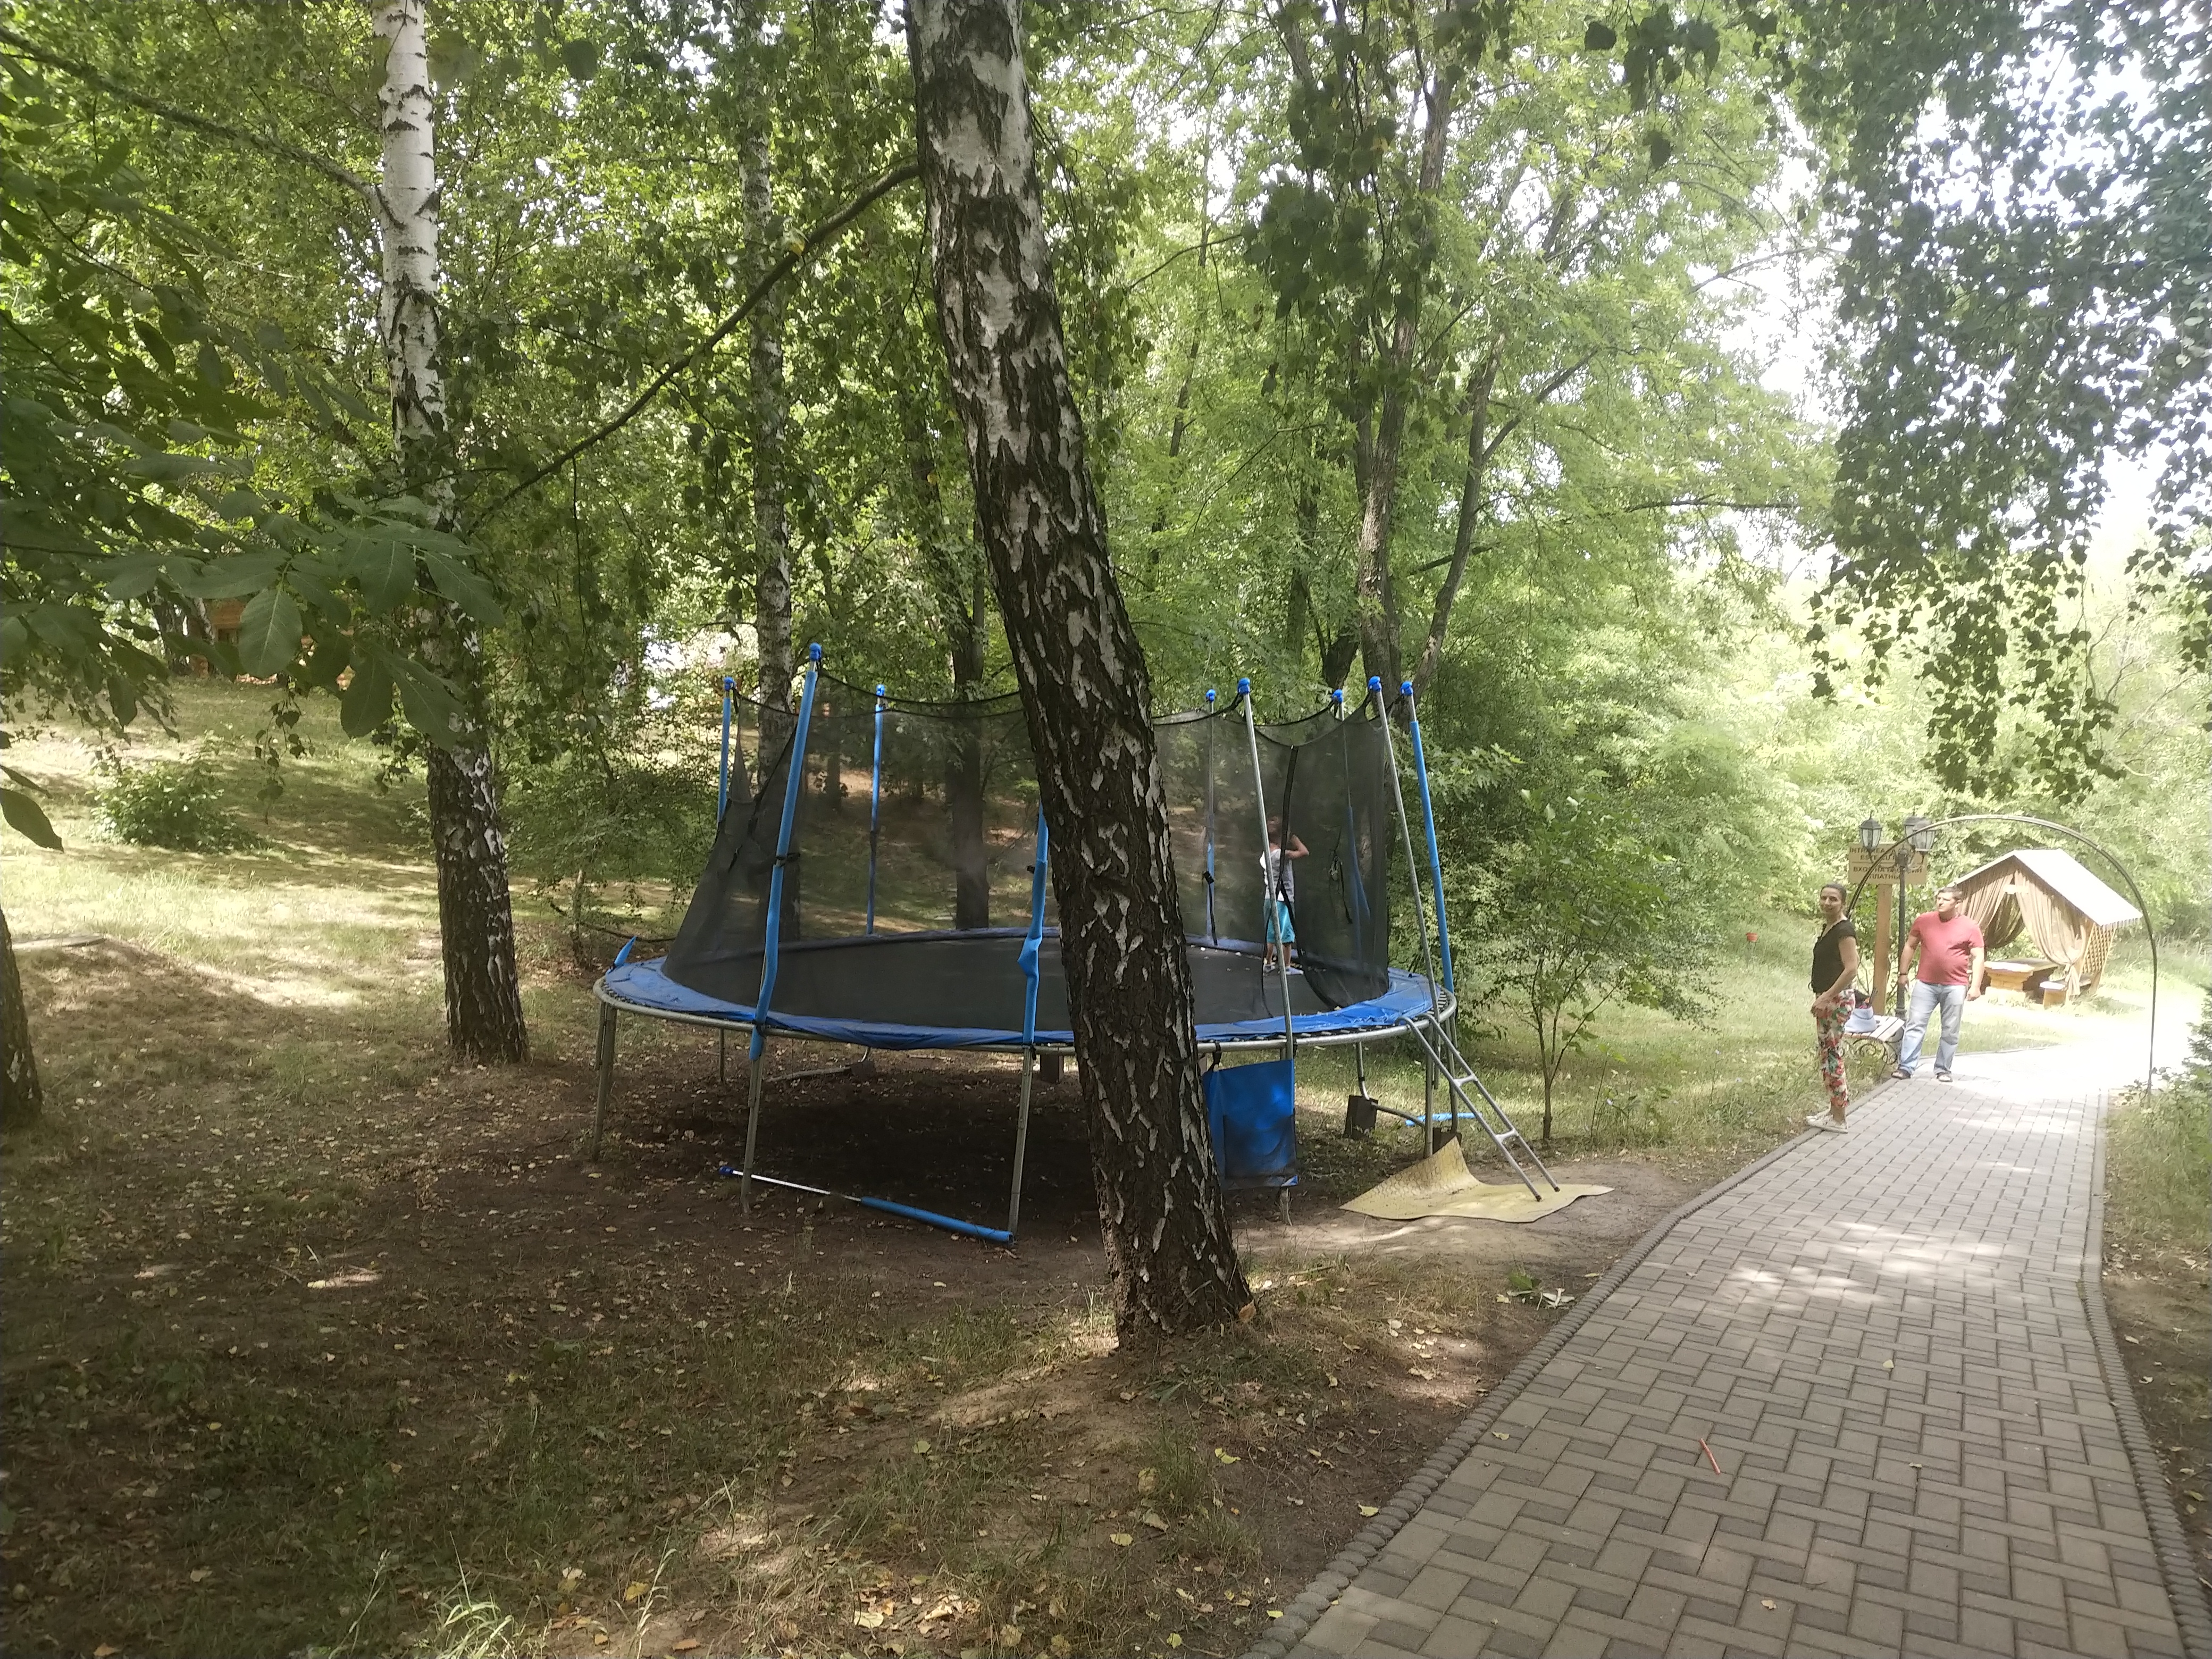 MD, District Criuleni, Satul Magdacesti, Bătut la International Park